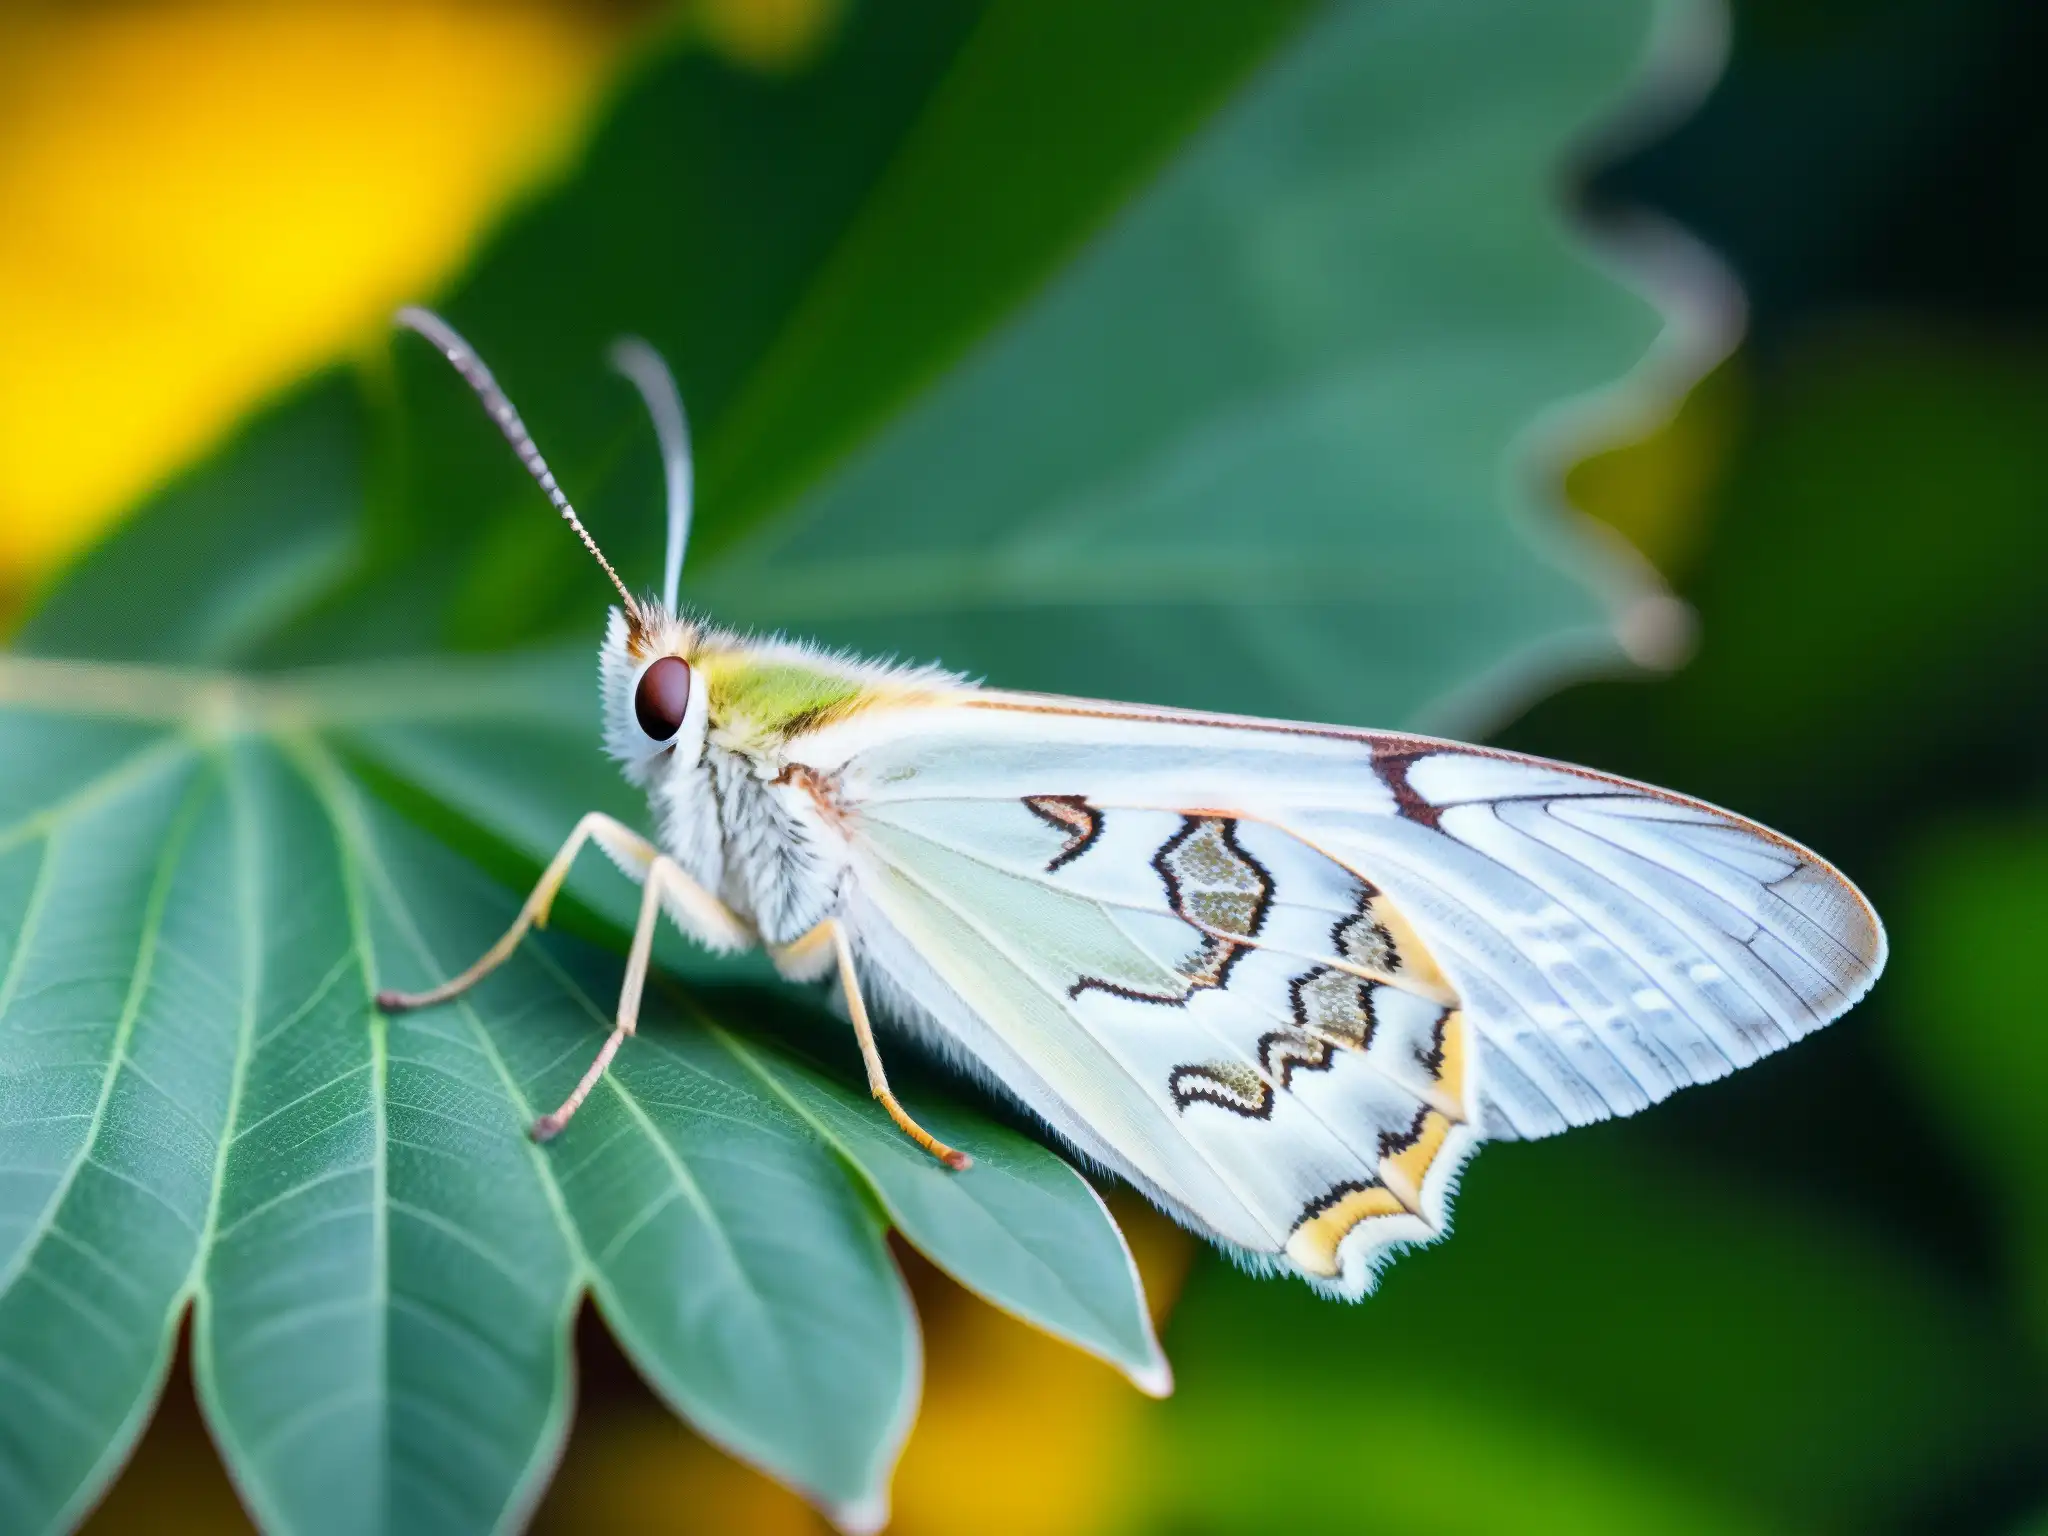 Hermosa mariposa descansa en hoja, destacando sus patrones intrincados y alas delicadas